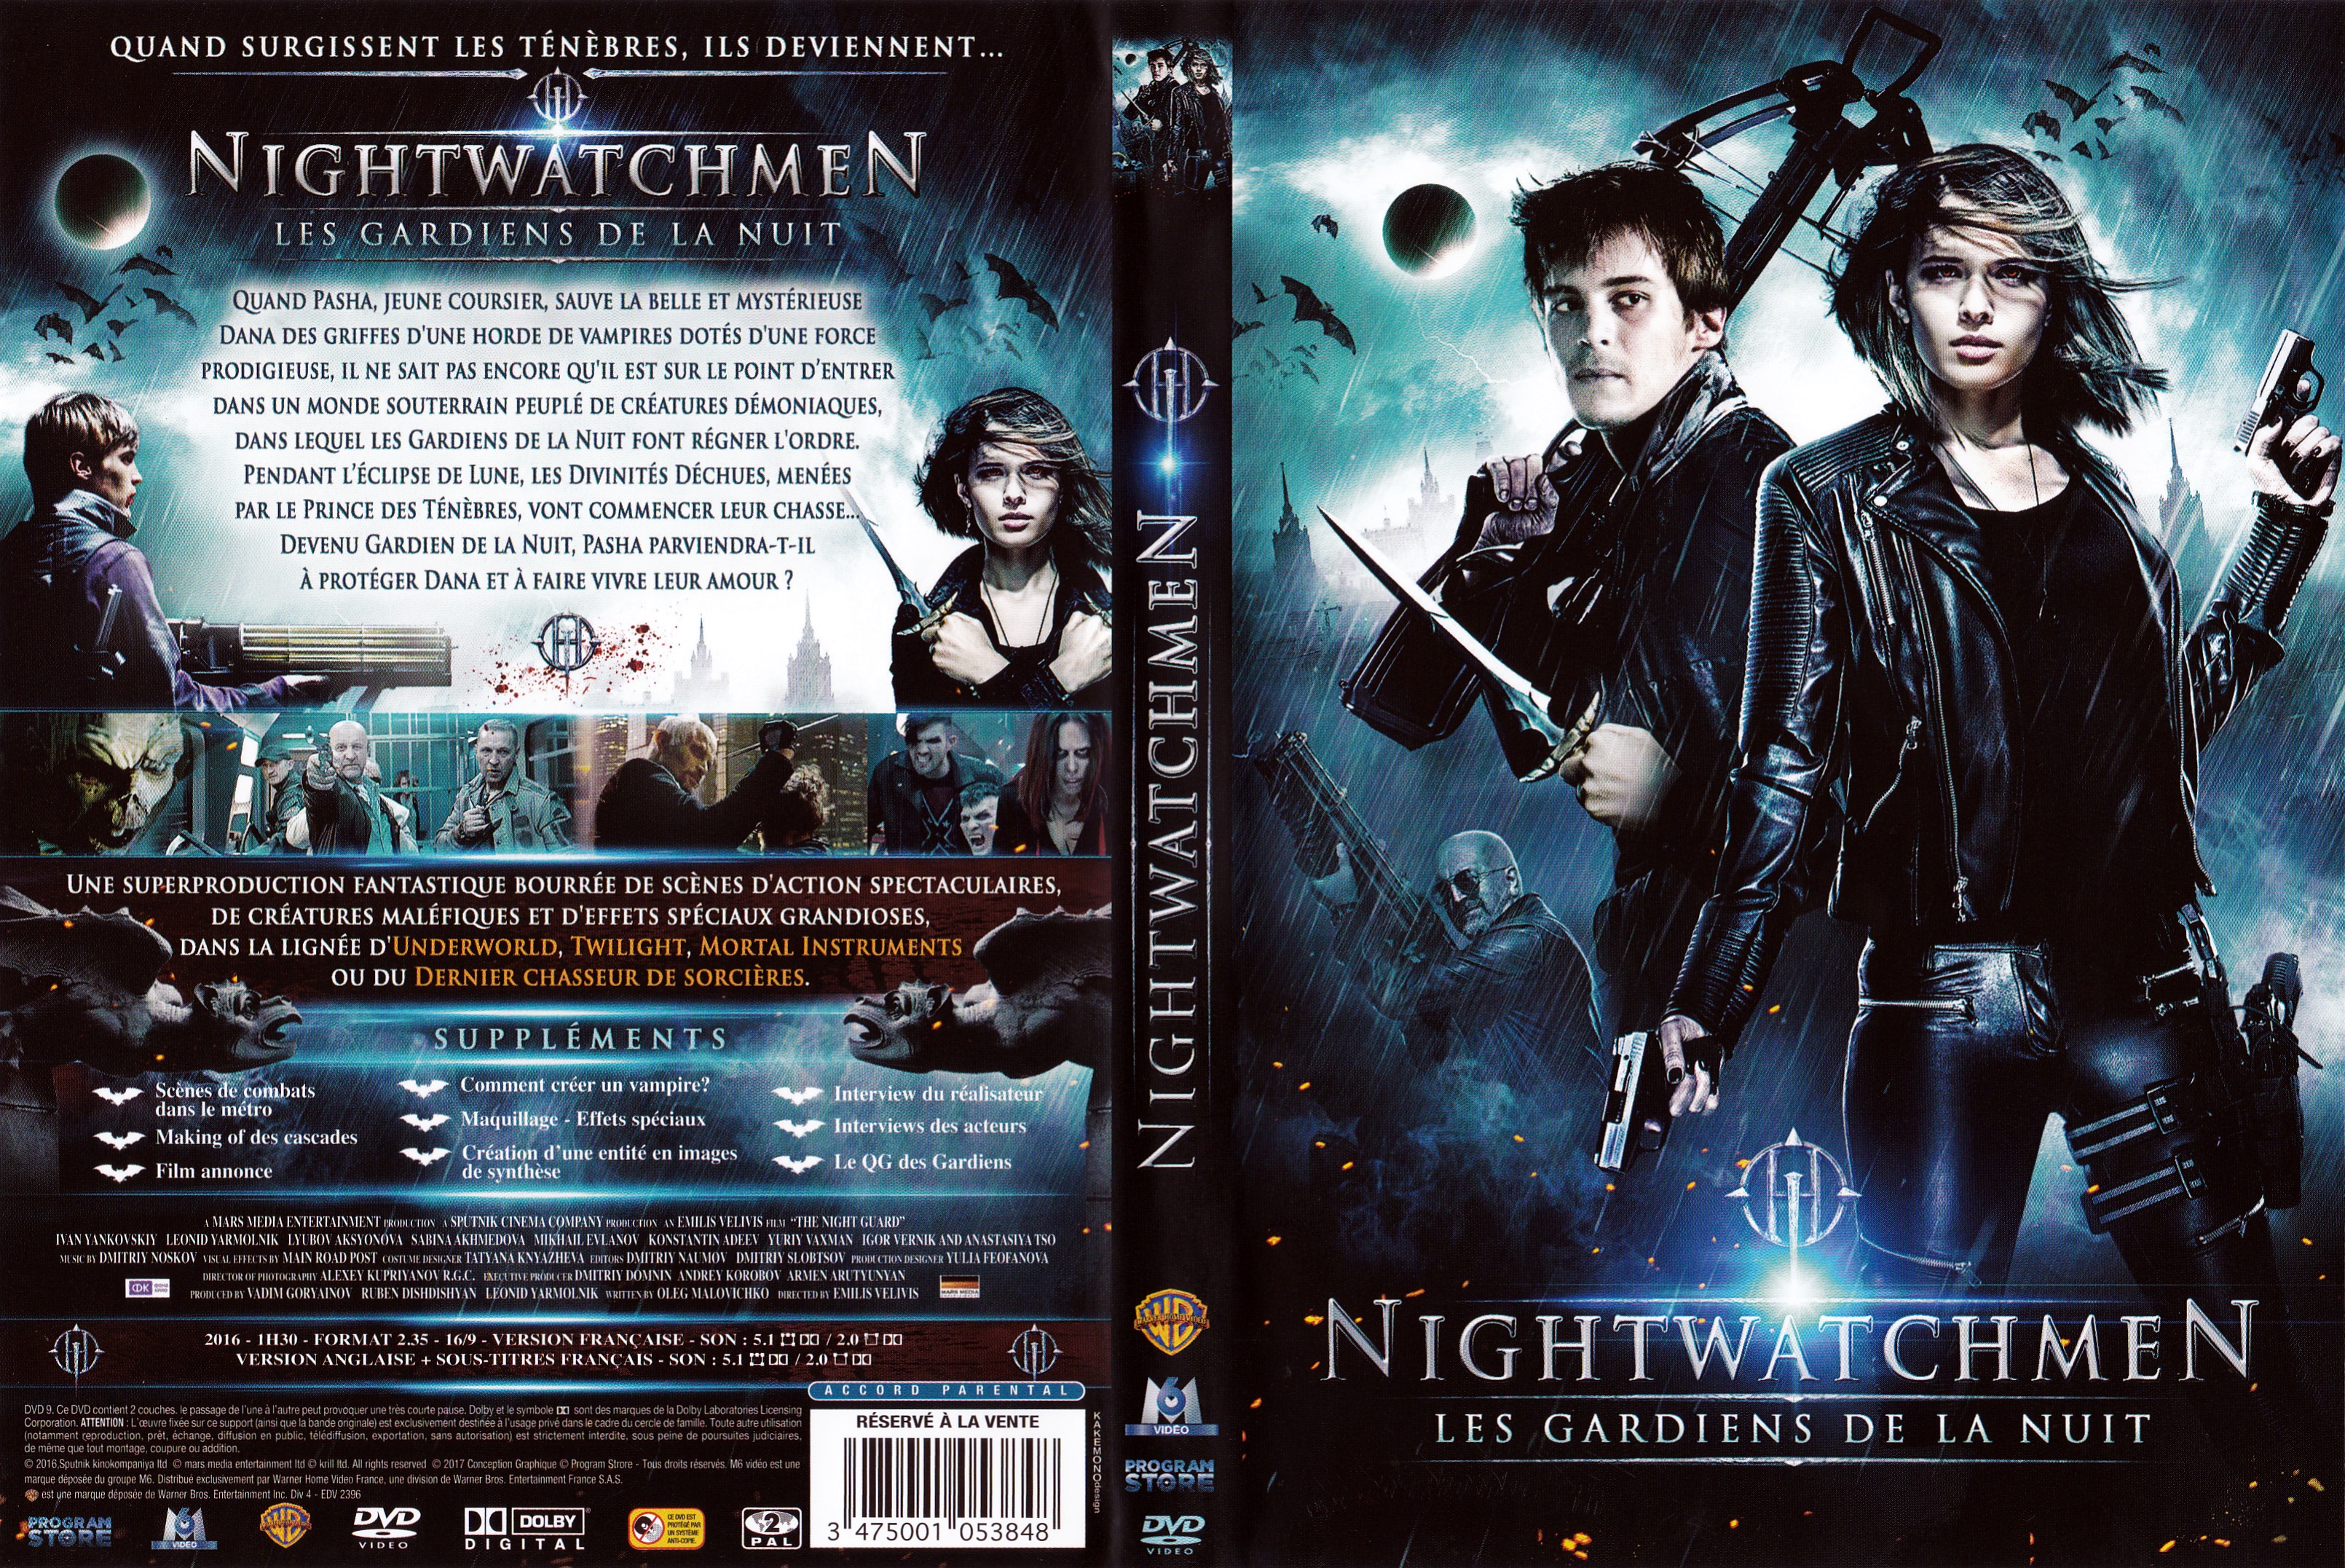 Jaquette DVD Nightwatchmen - Les gardiens de la nuit